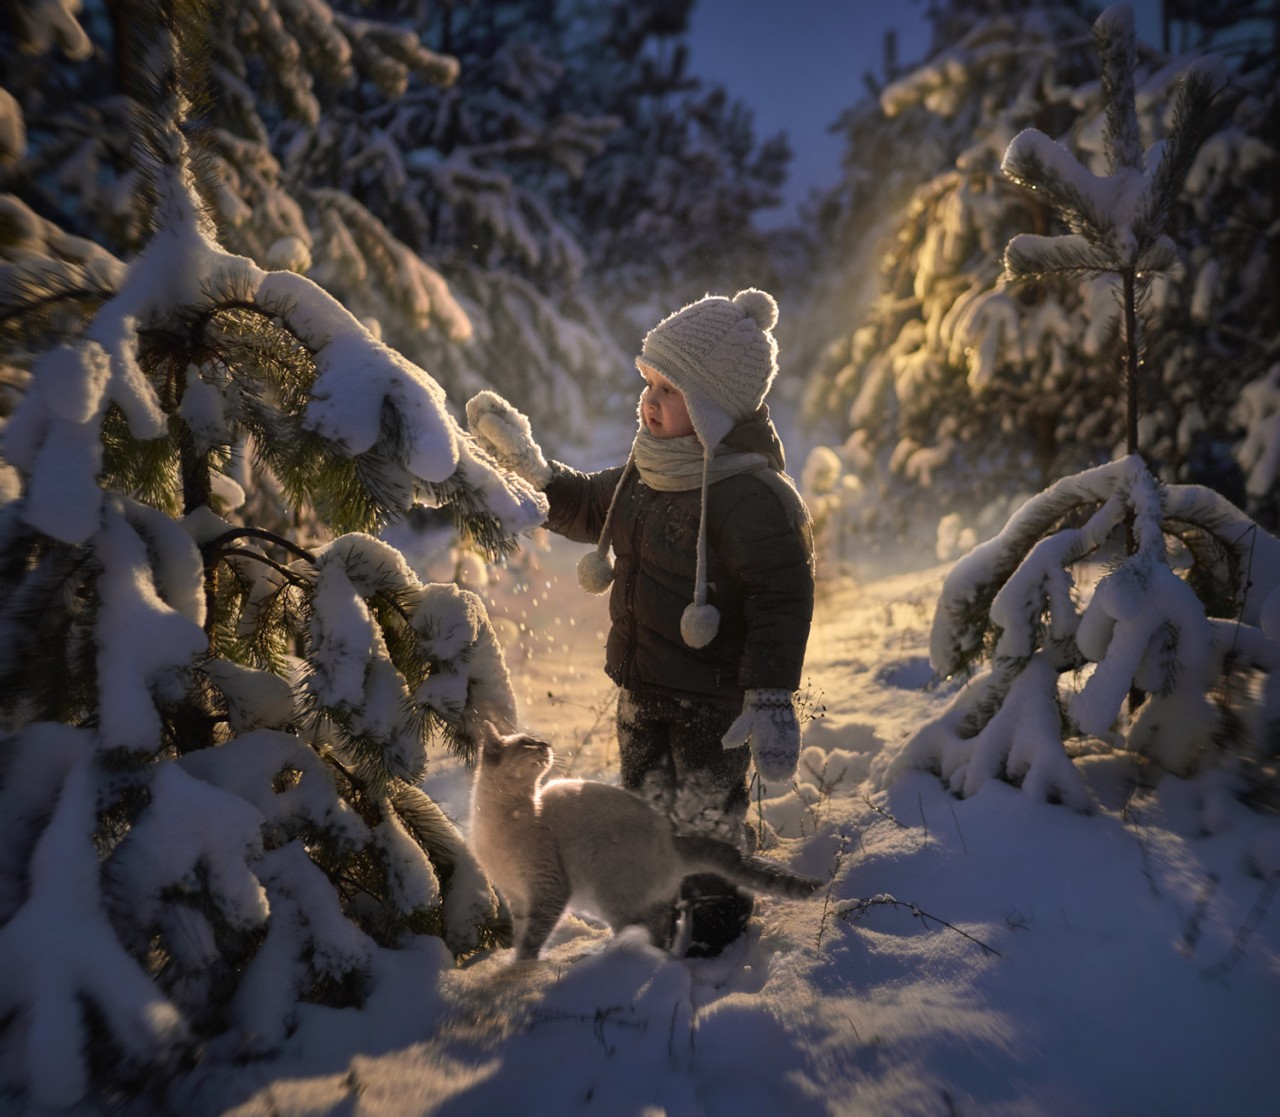  Ребенок стоит у елки в снегу, by Elena Shumilova